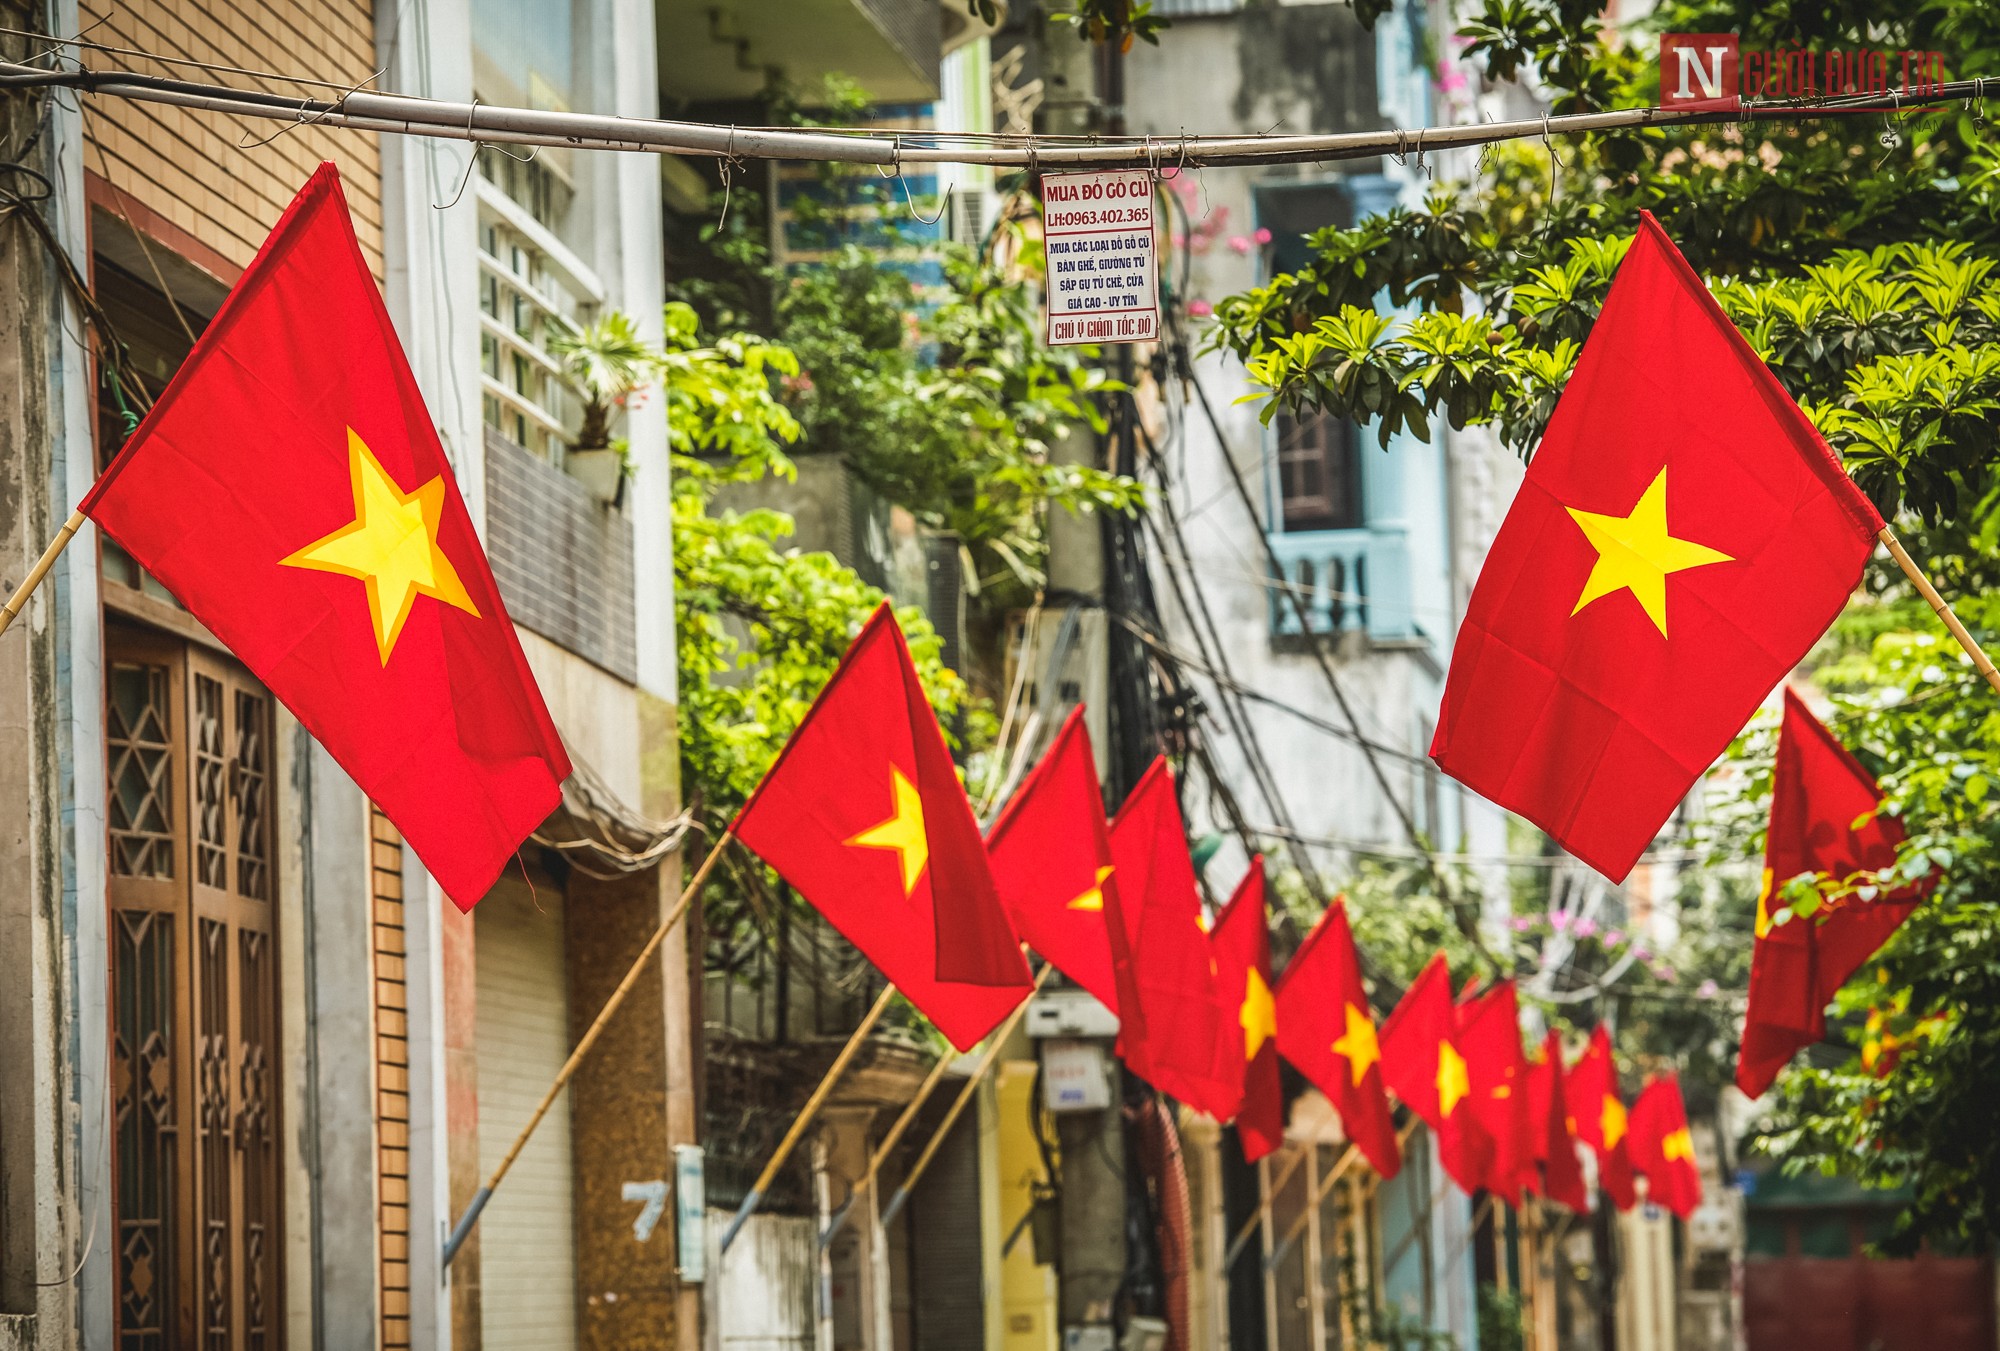 Cờ tổ quốc: Hãy xem những bức ảnh tuyệt đẹp về cờ tổ quốc, biểu tượng trang trọng và ý nghĩa của đất nước Việt Nam.